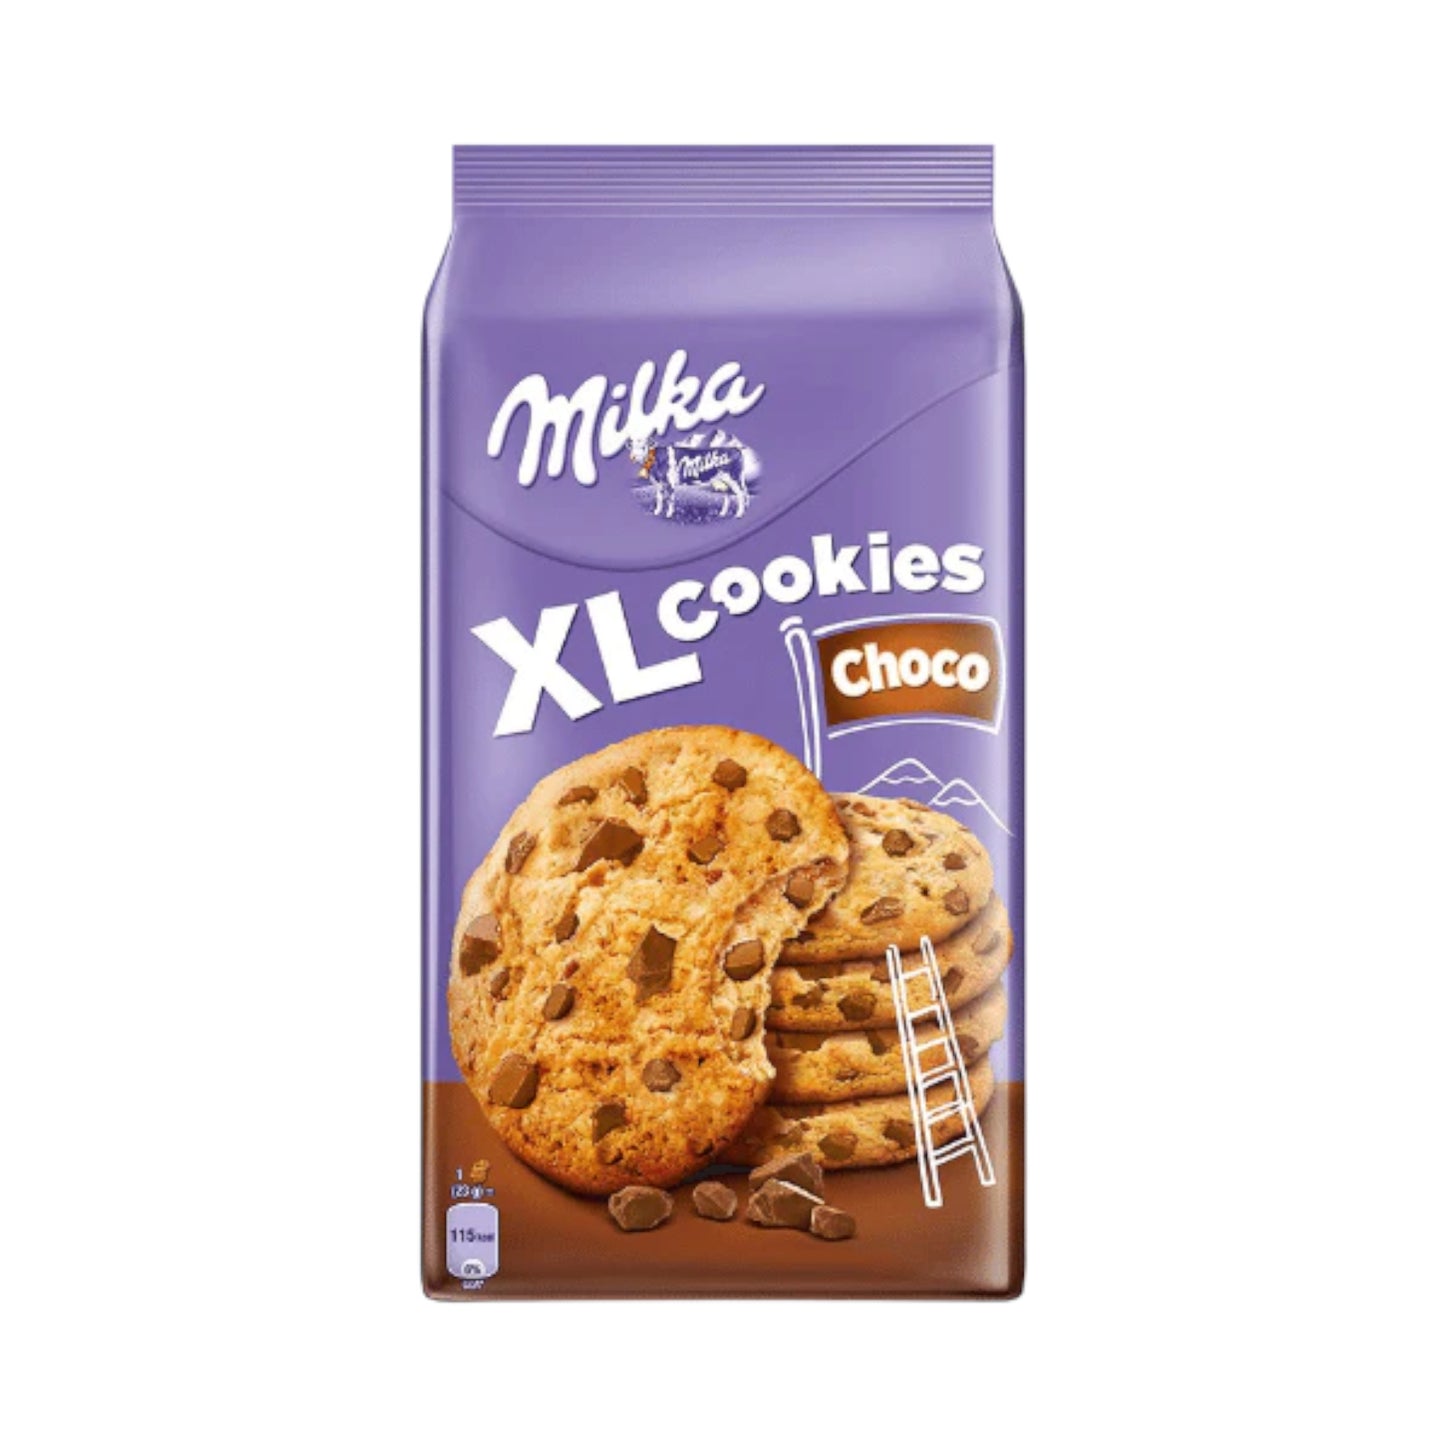 Milka Xl Cookies Choco - (184g)